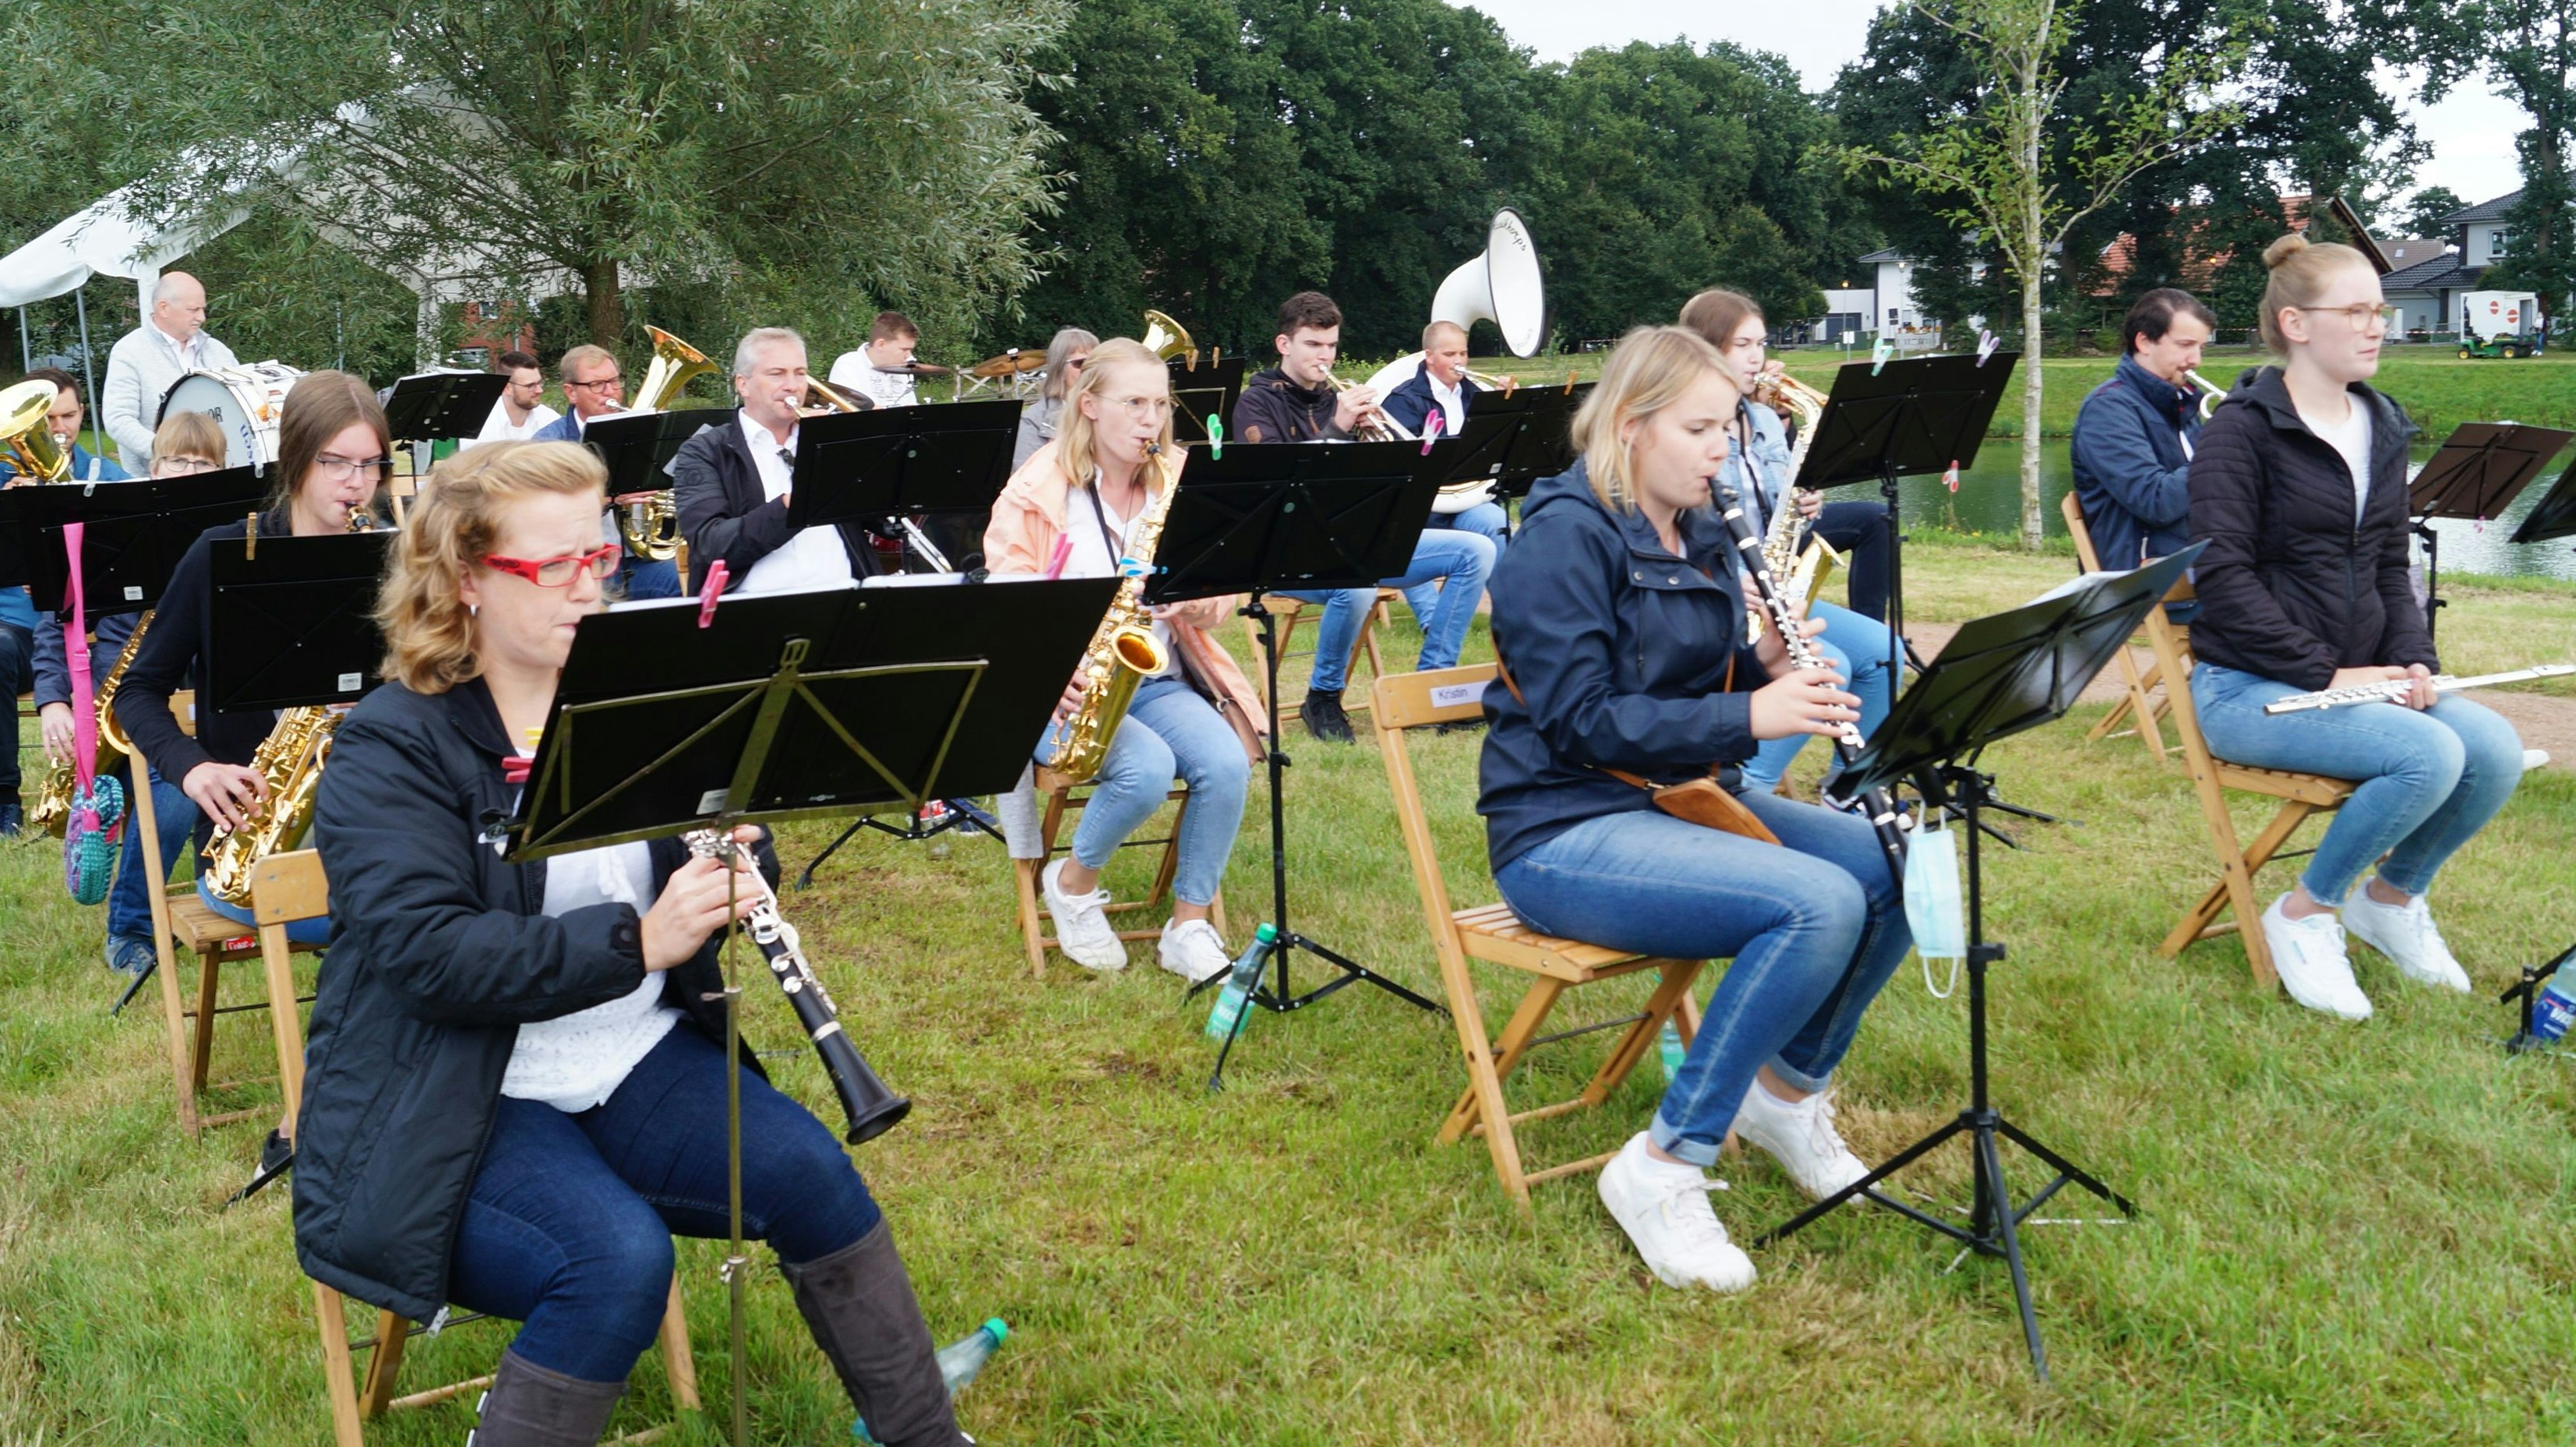 Harmonie trotz Abstand: Das Musikkorps Höltinghausen hatte für sein Konzert am örtlichen Dorfteich ein ausgeklügeltes Hygienekonzept erarbeitet.&nbsp; &nbsp; Foto: Nina Kannwischer